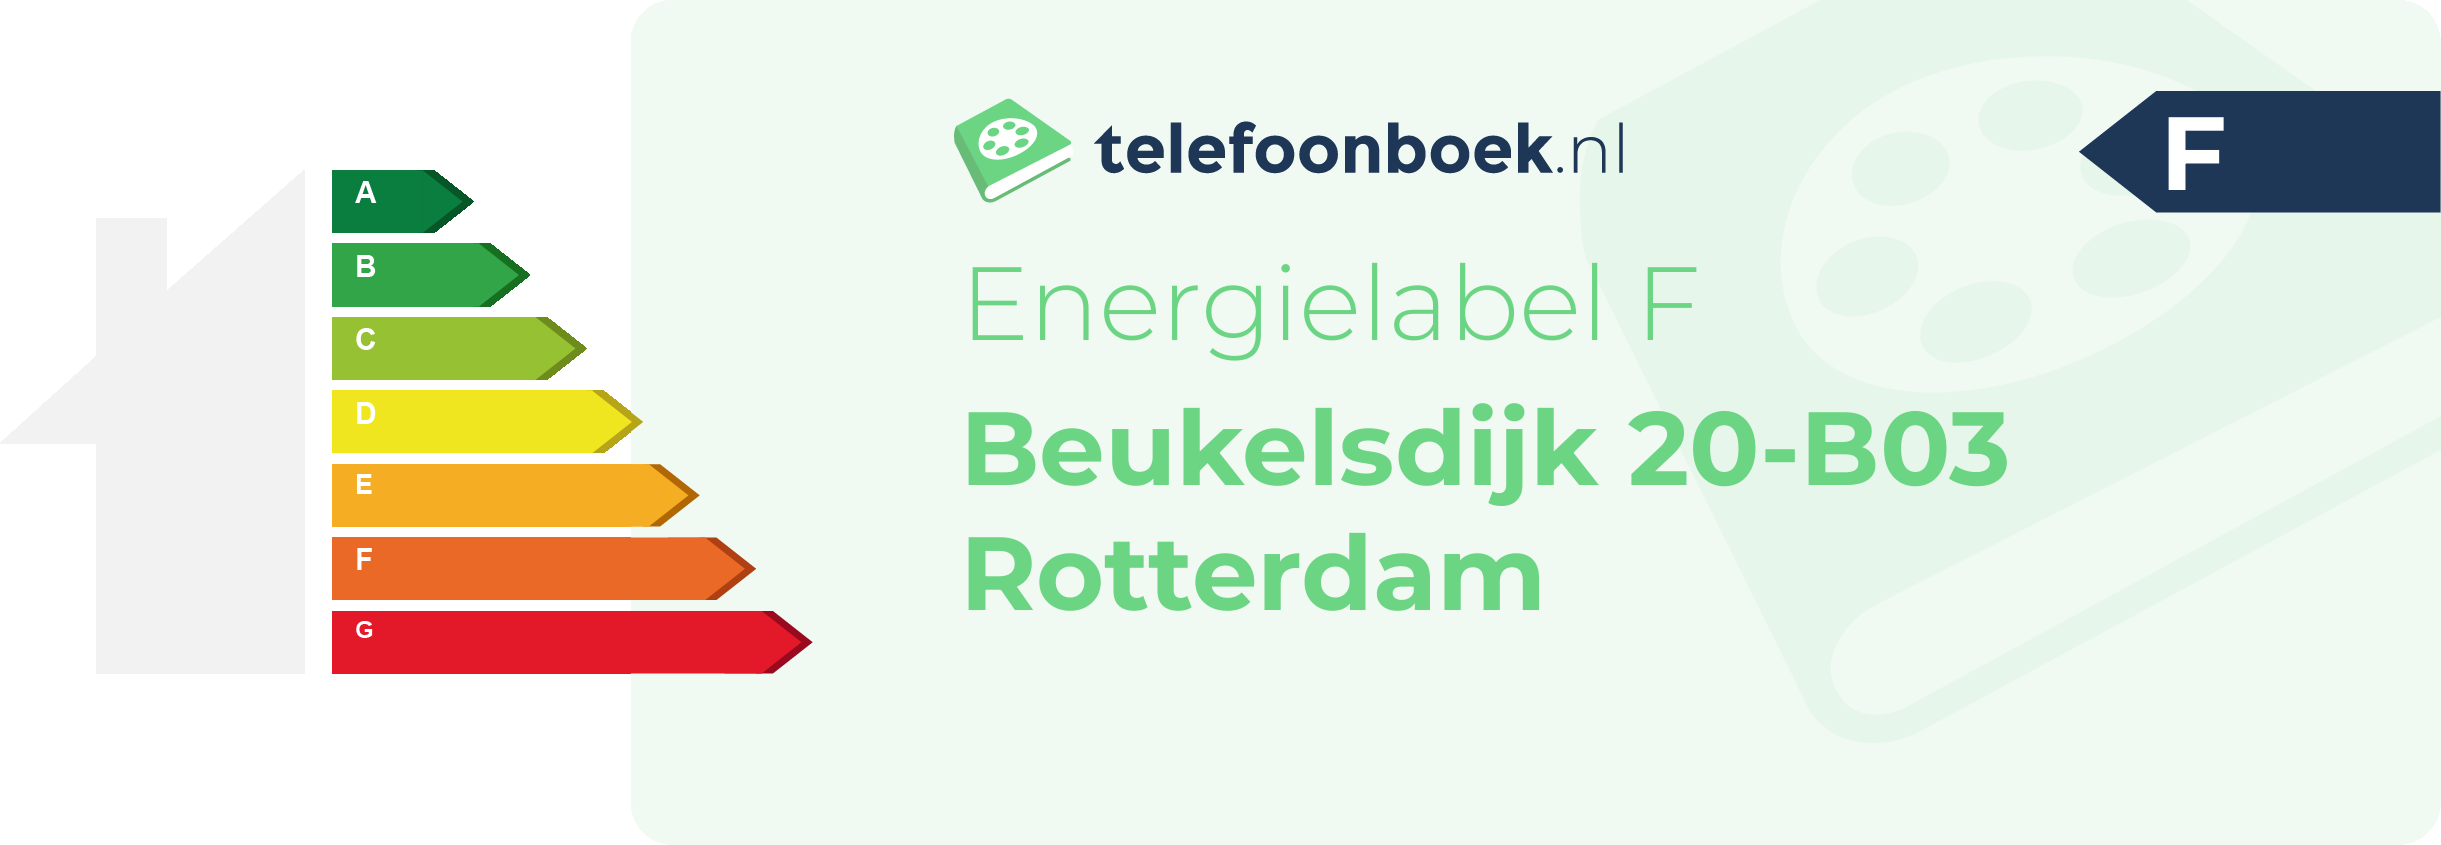 Energielabel Beukelsdijk 20-B03 Rotterdam